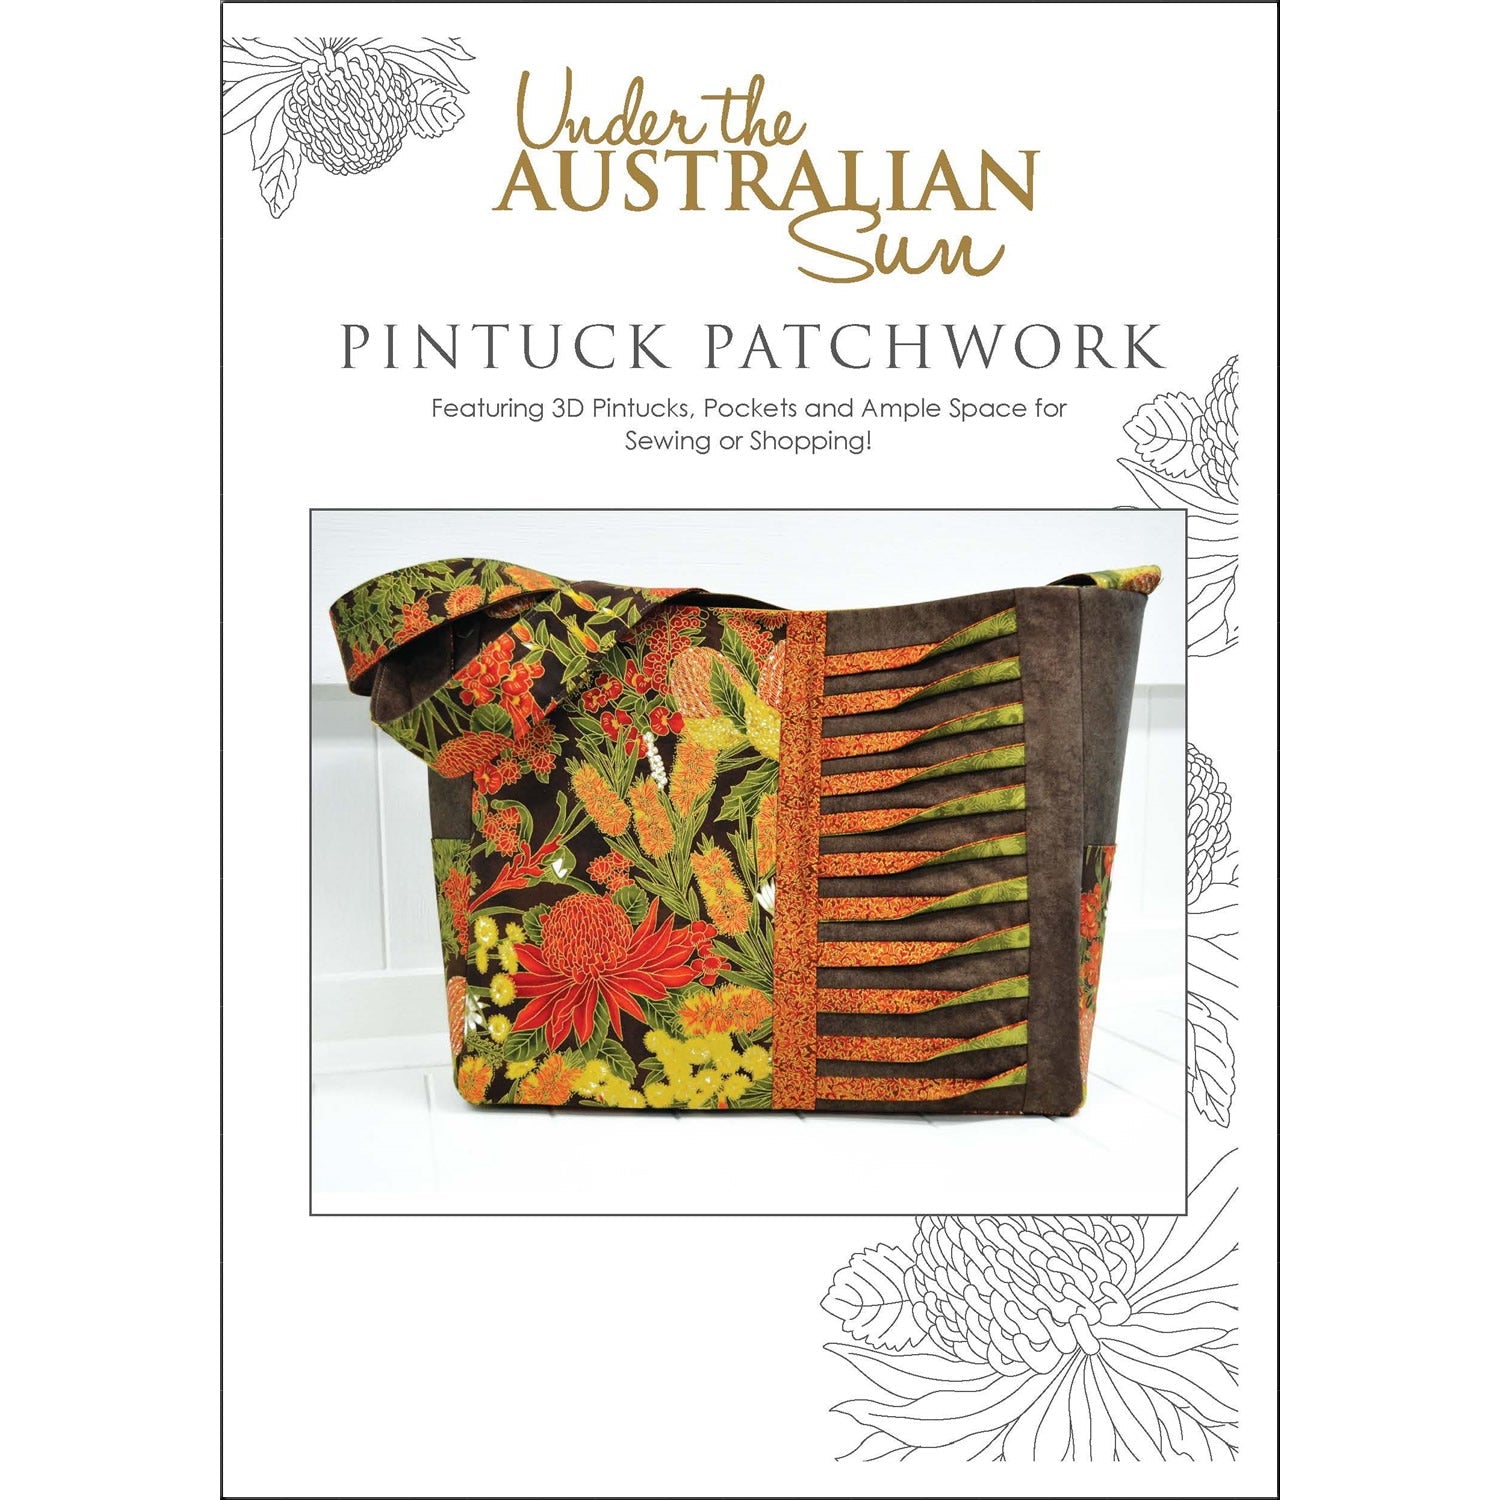 Pintuck Patchwork Bag